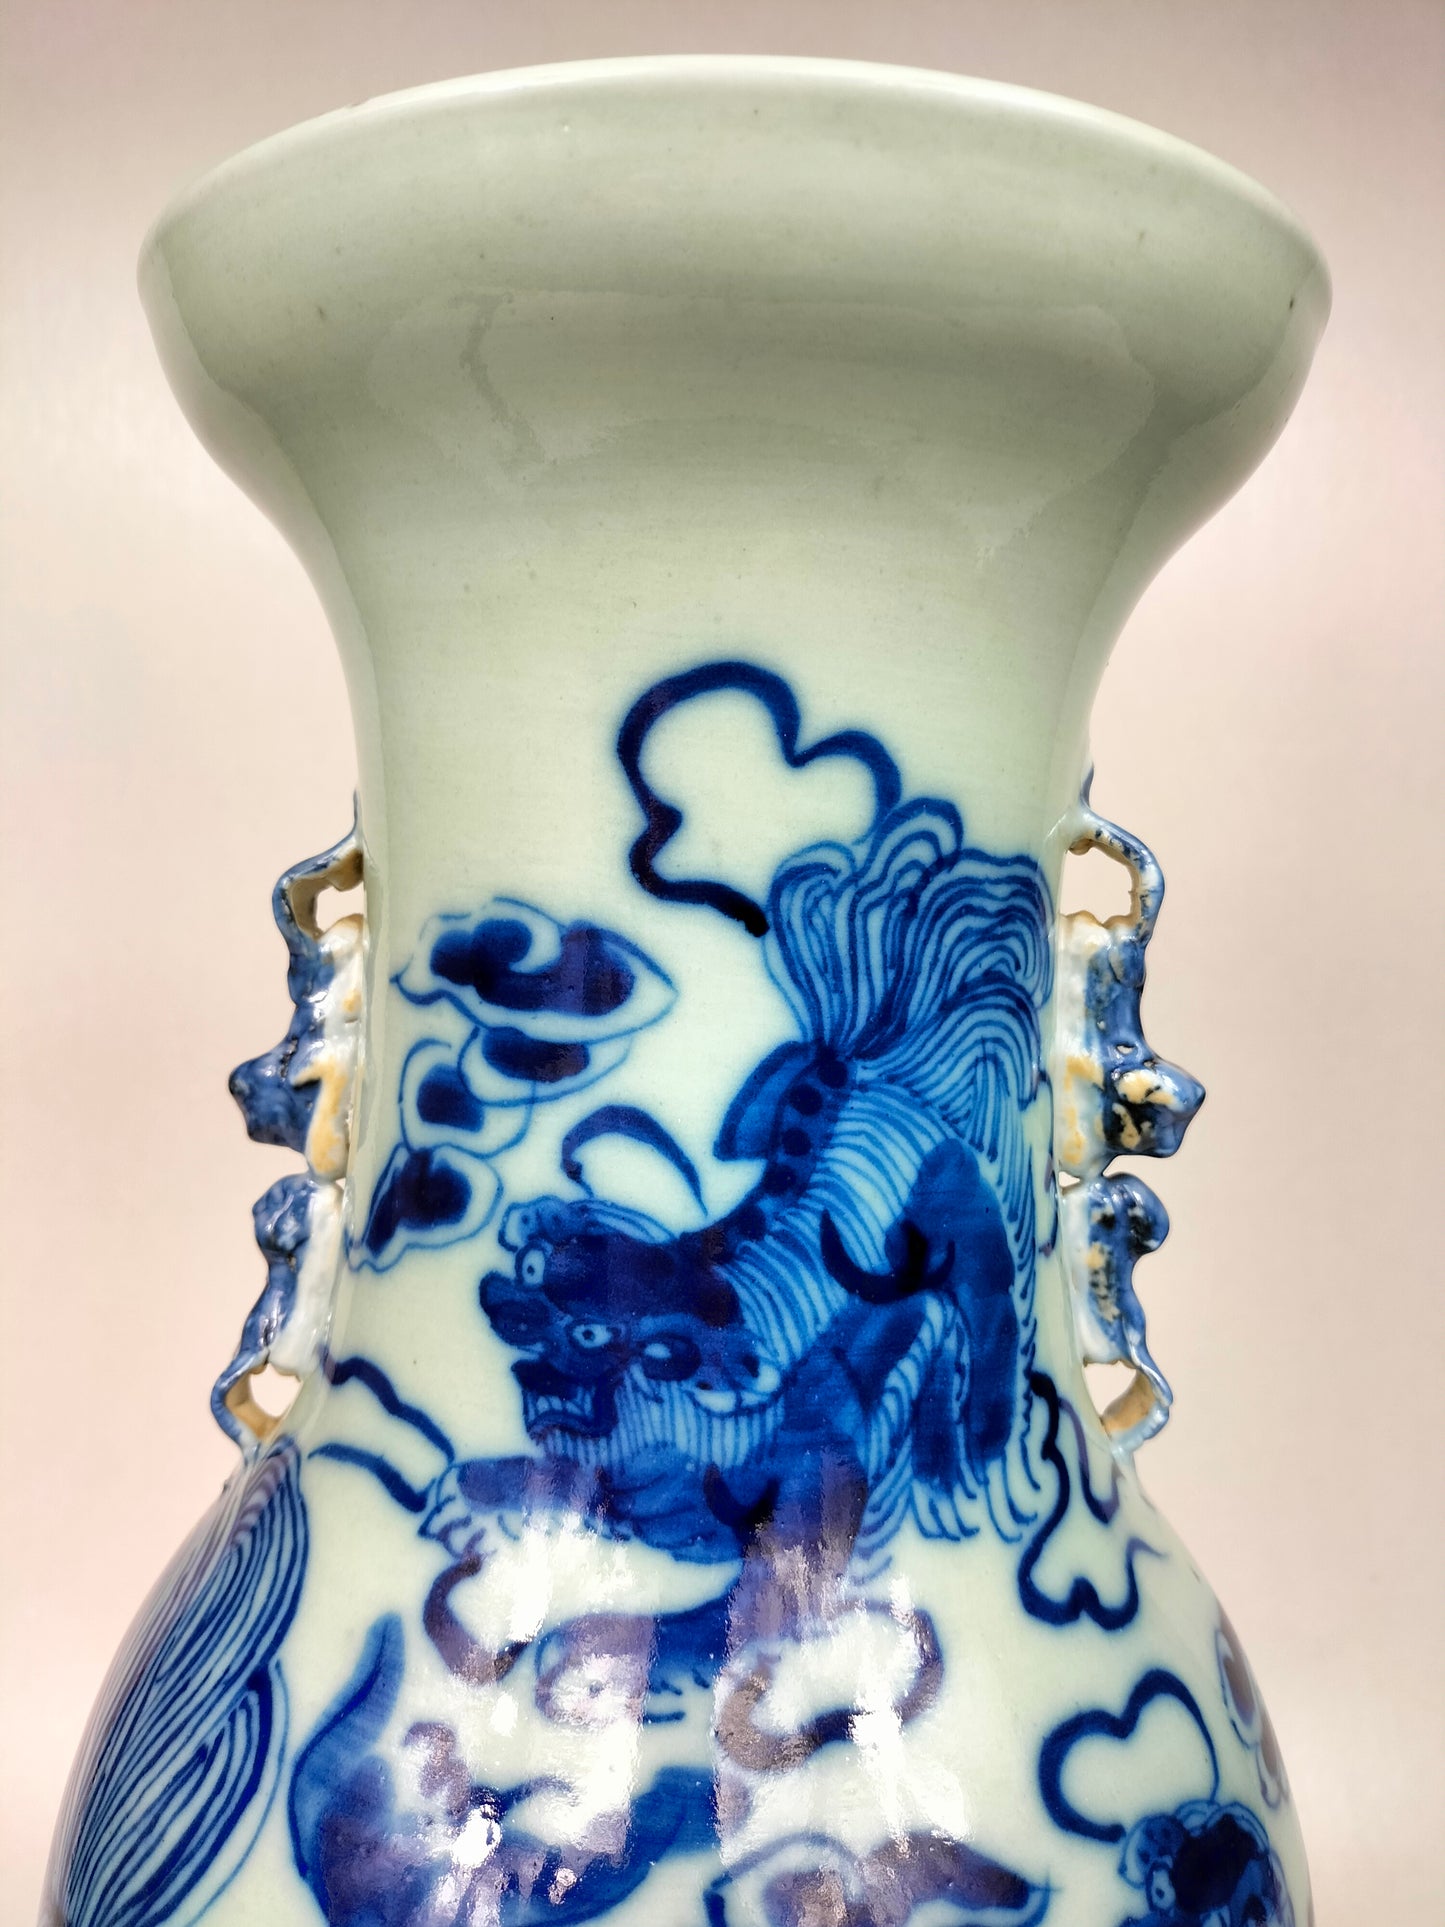 Grande vaso chinês antigo em cor celadon decorado com foo dog // Dinastia Qing - século XIX